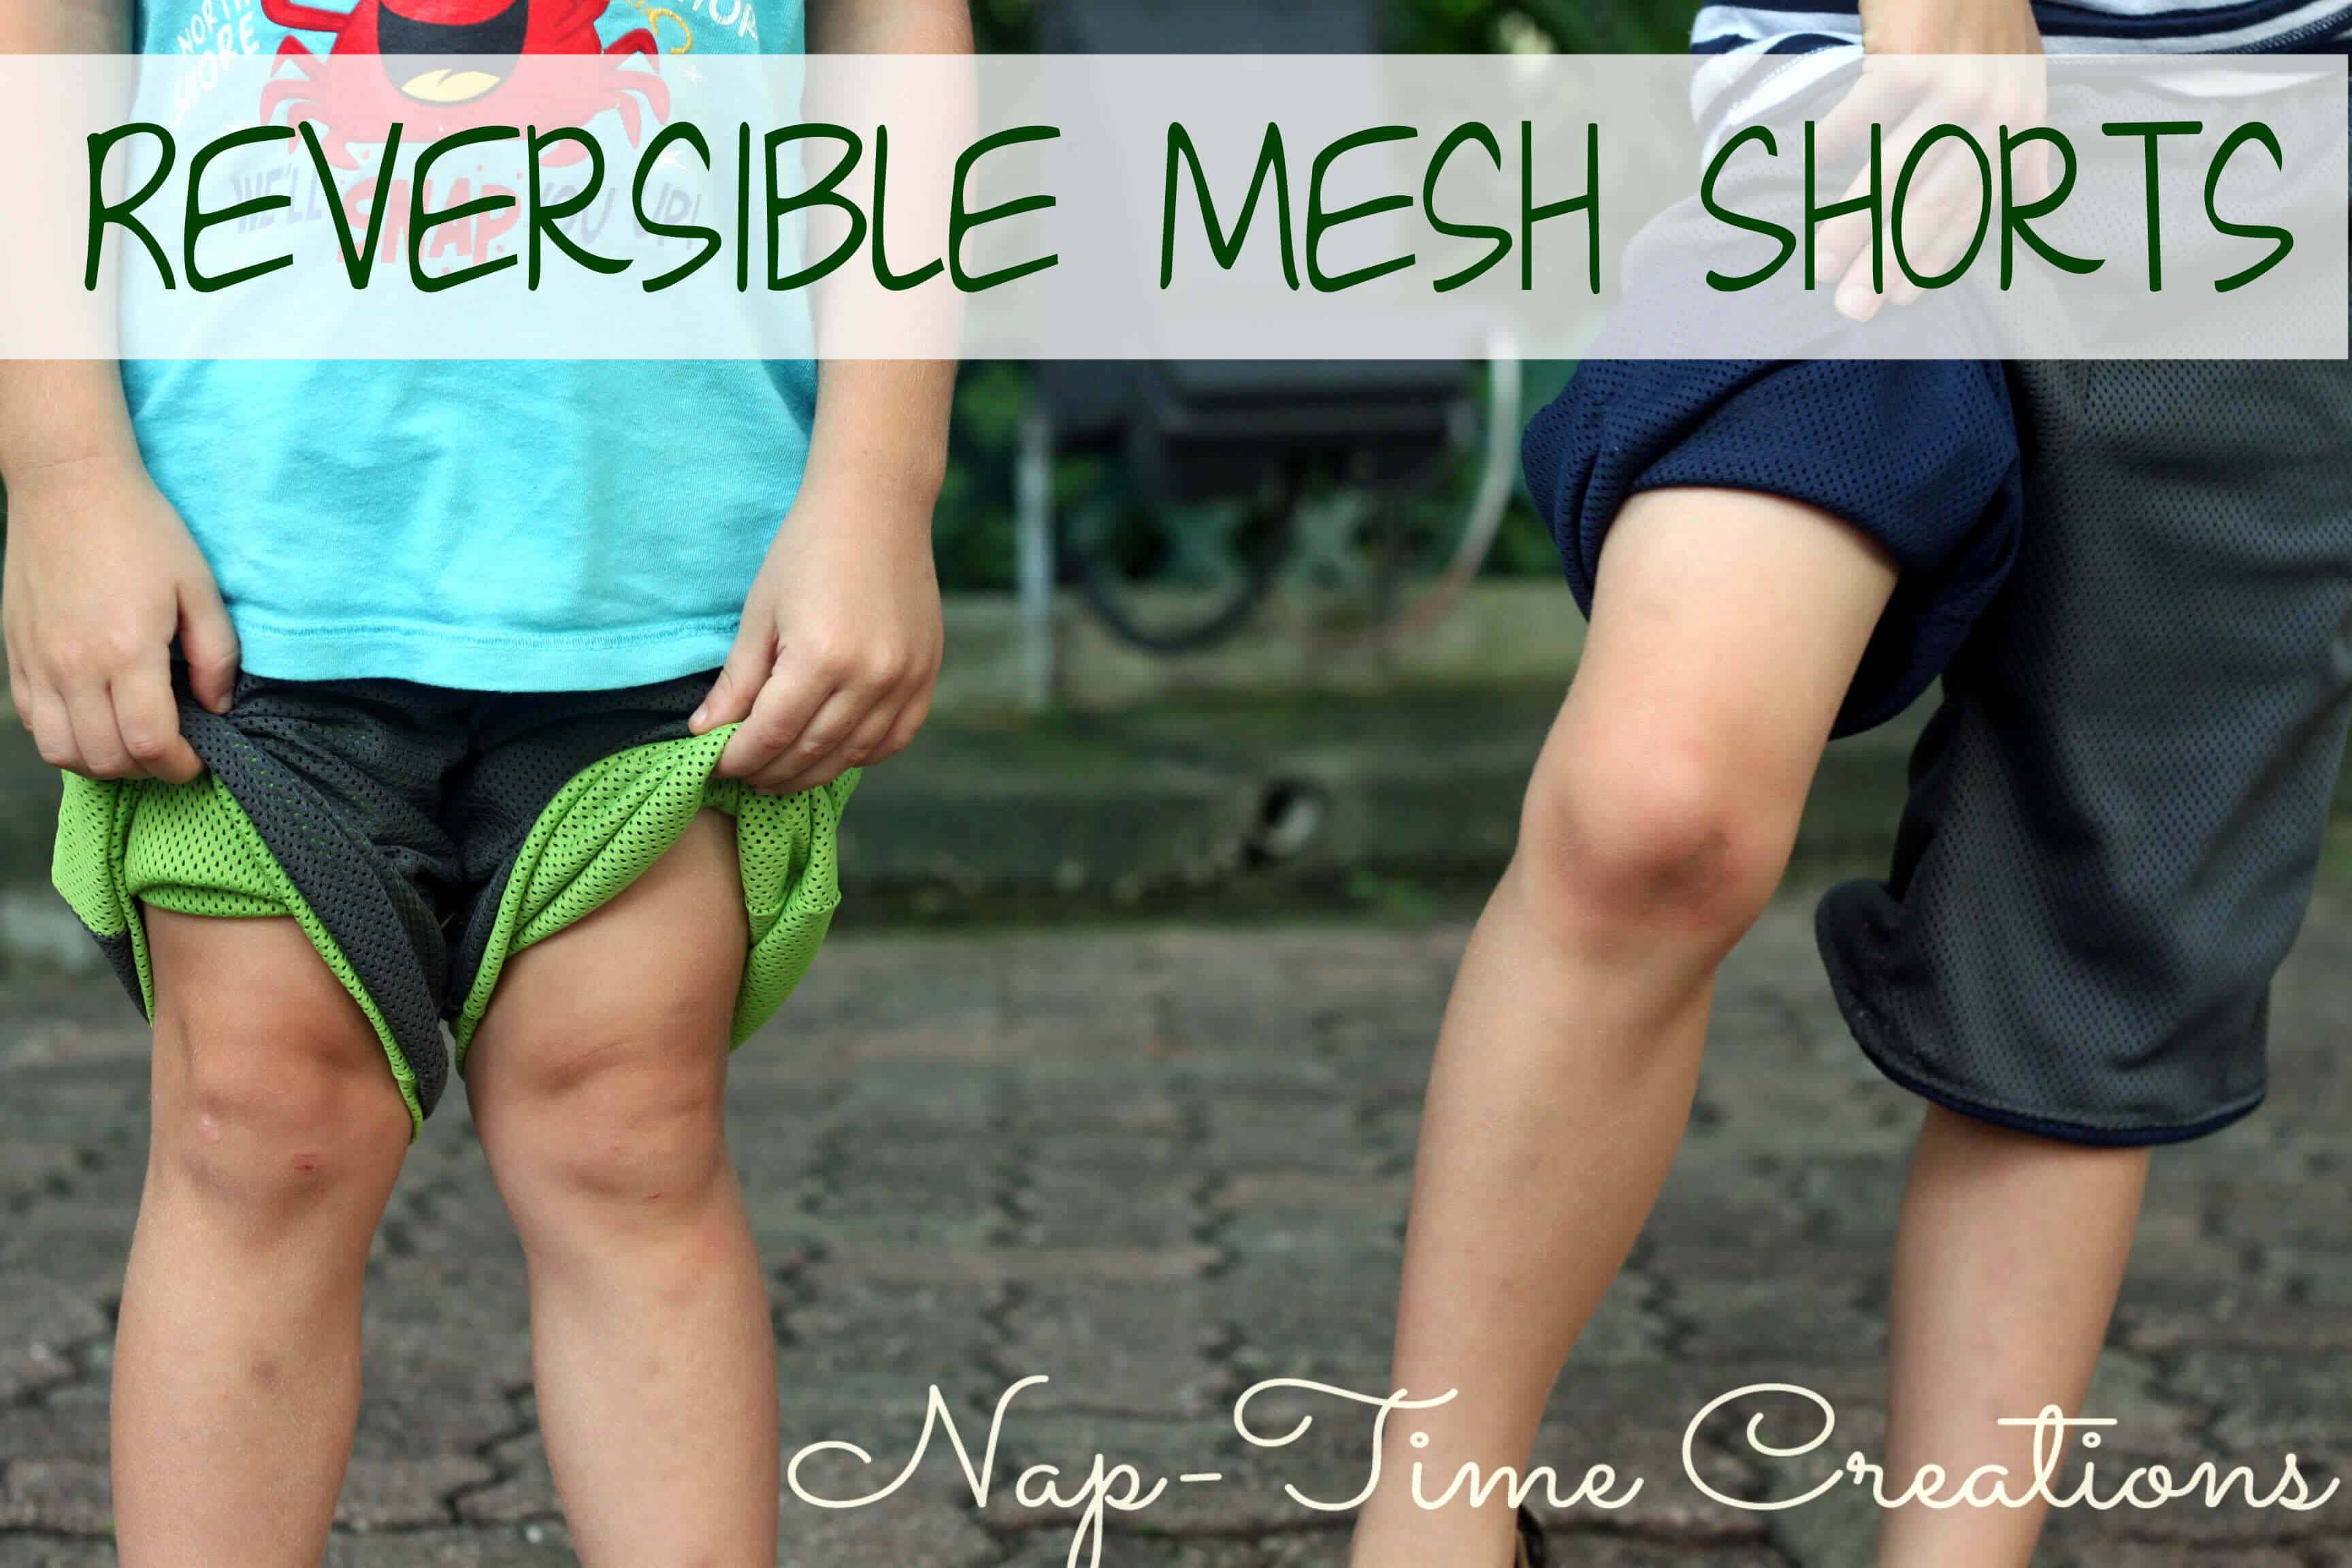 Reversbile mesh shorts